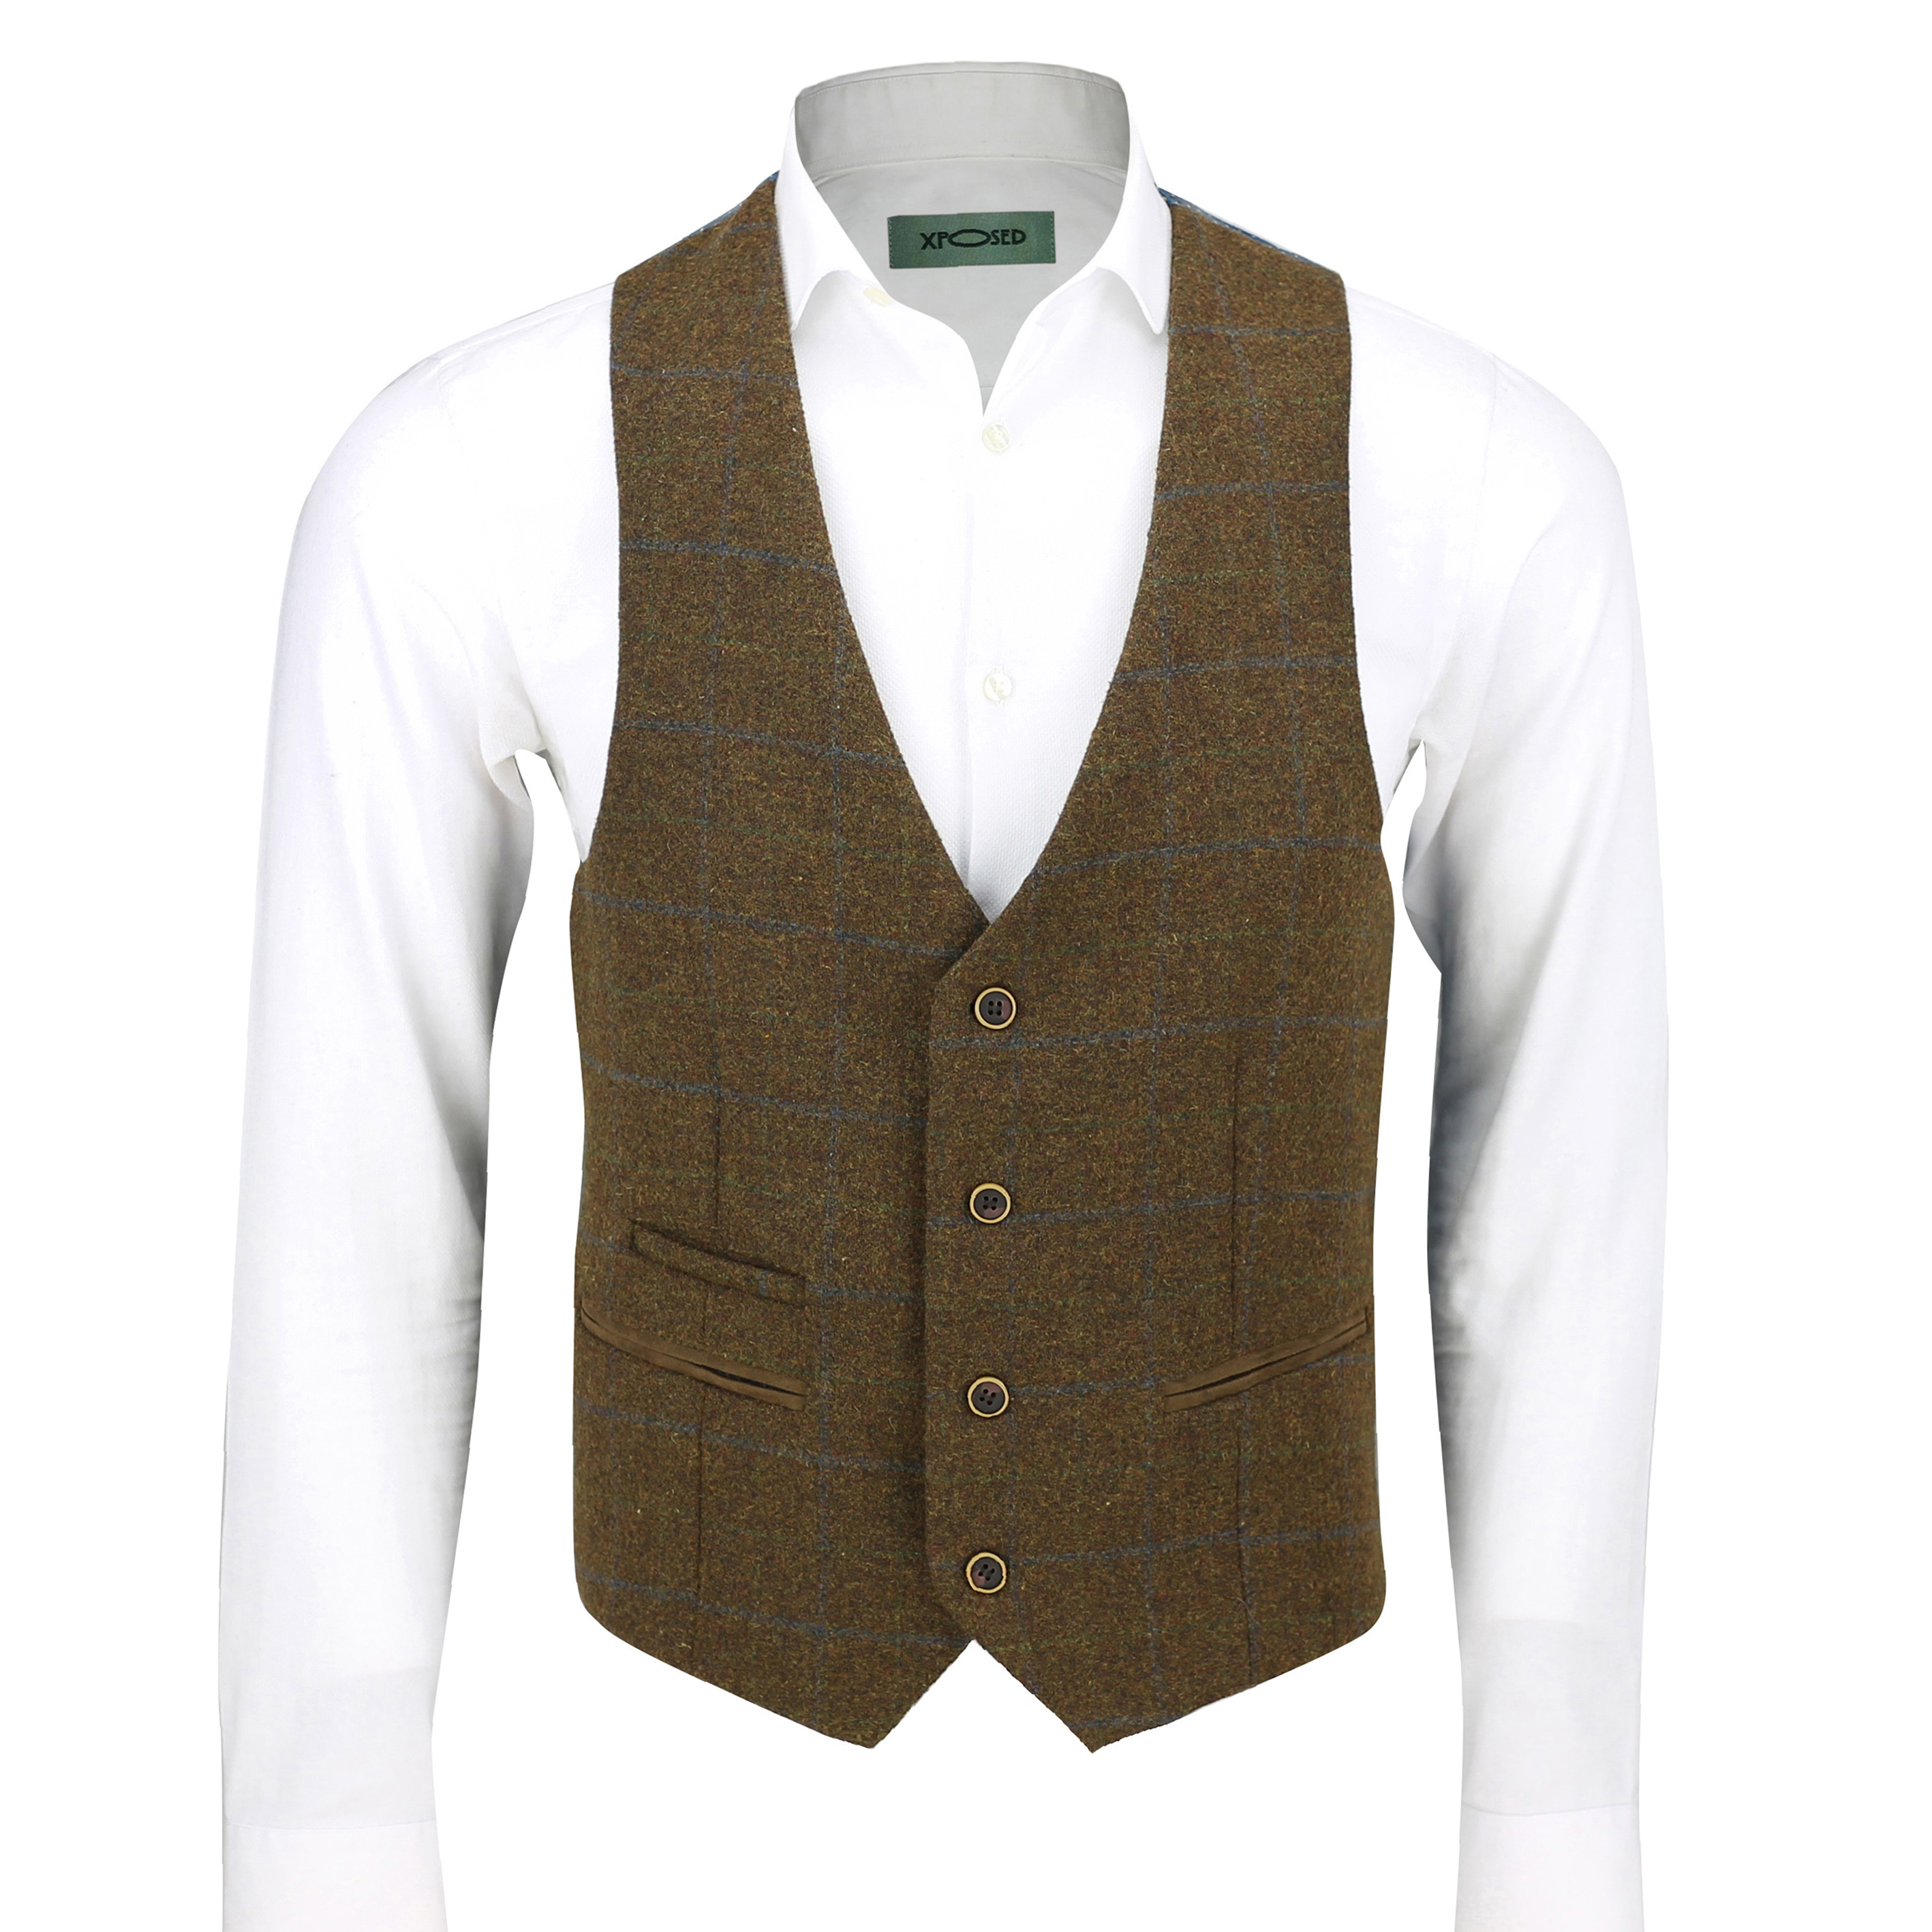 Mens Vintage Tweed Check Herringbone Waistcoat Casual Retro Grey Brown ...